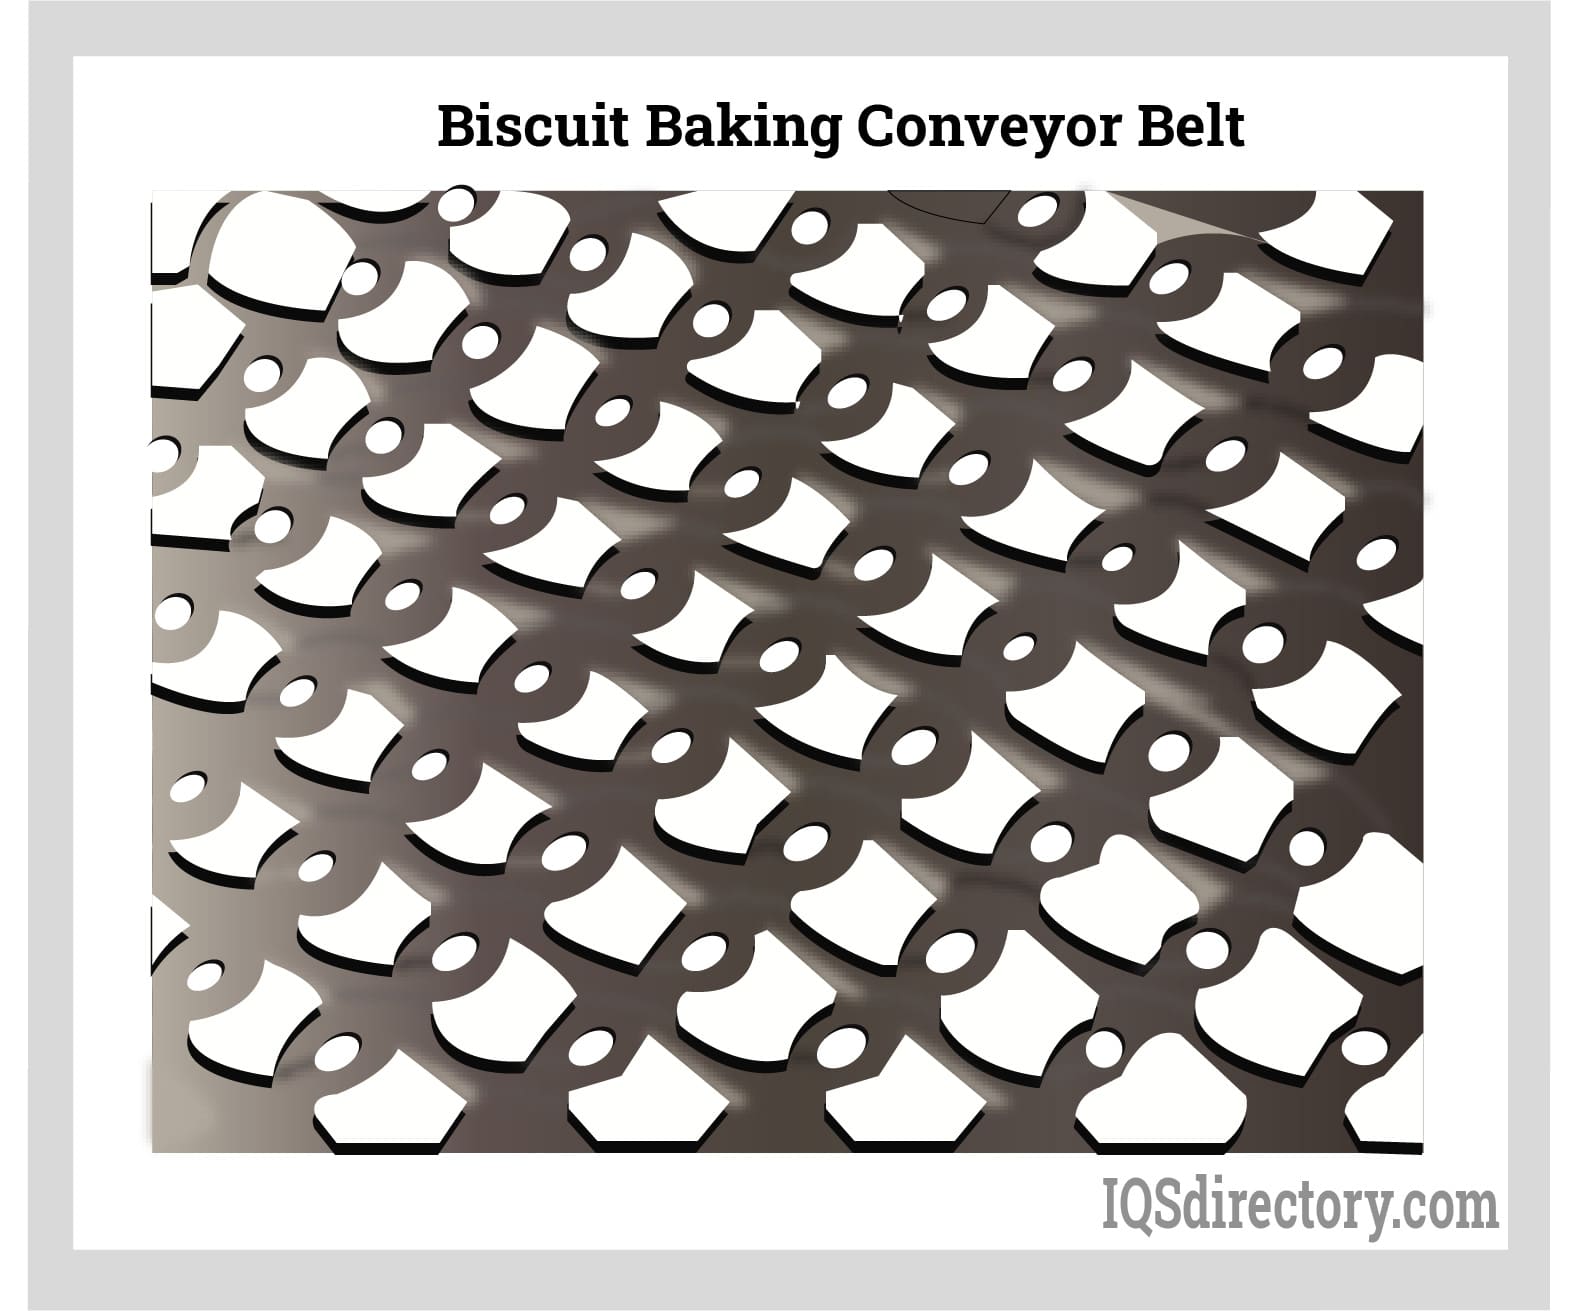 Biscuit Baking Conveyor Belt